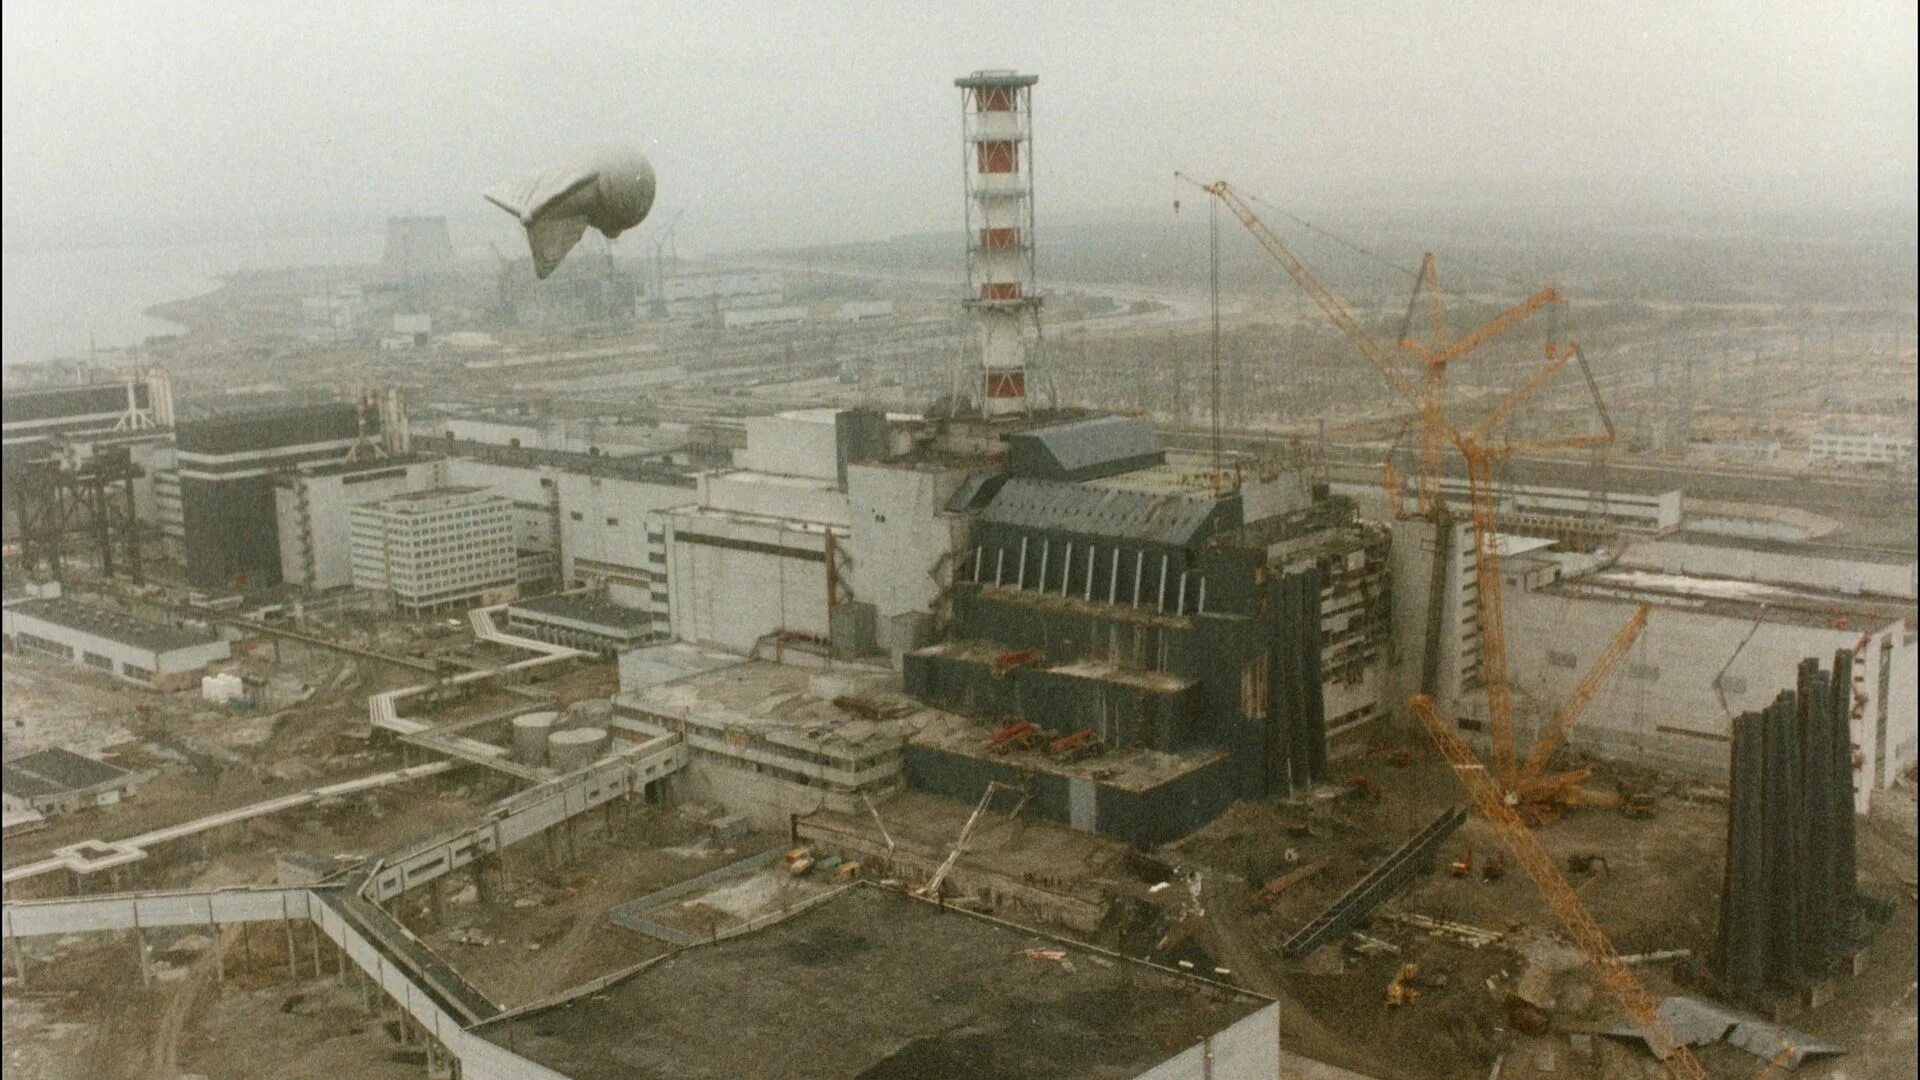 Катастрофа на аэс 1986. Чернобыльская АЭС 1986. 4 Энергоблок ЧАЭС 1986. Разрушенный 4 энергоблок ЧАЭС. ЧАЭС 1986 26 апреля.